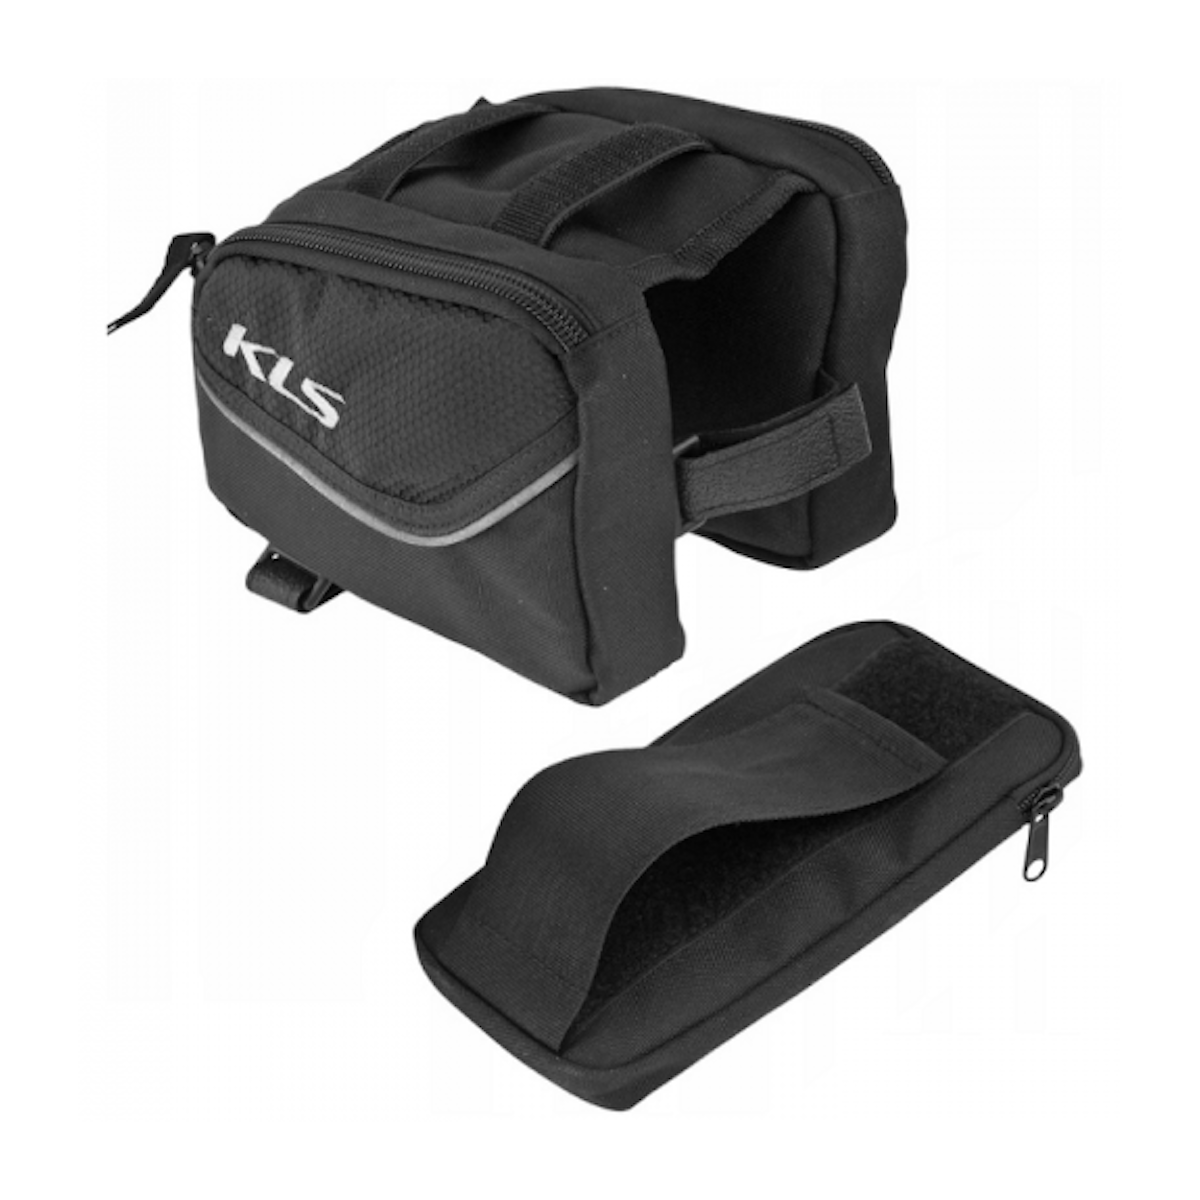 KLS ALPHA 0.9L frame bag - black